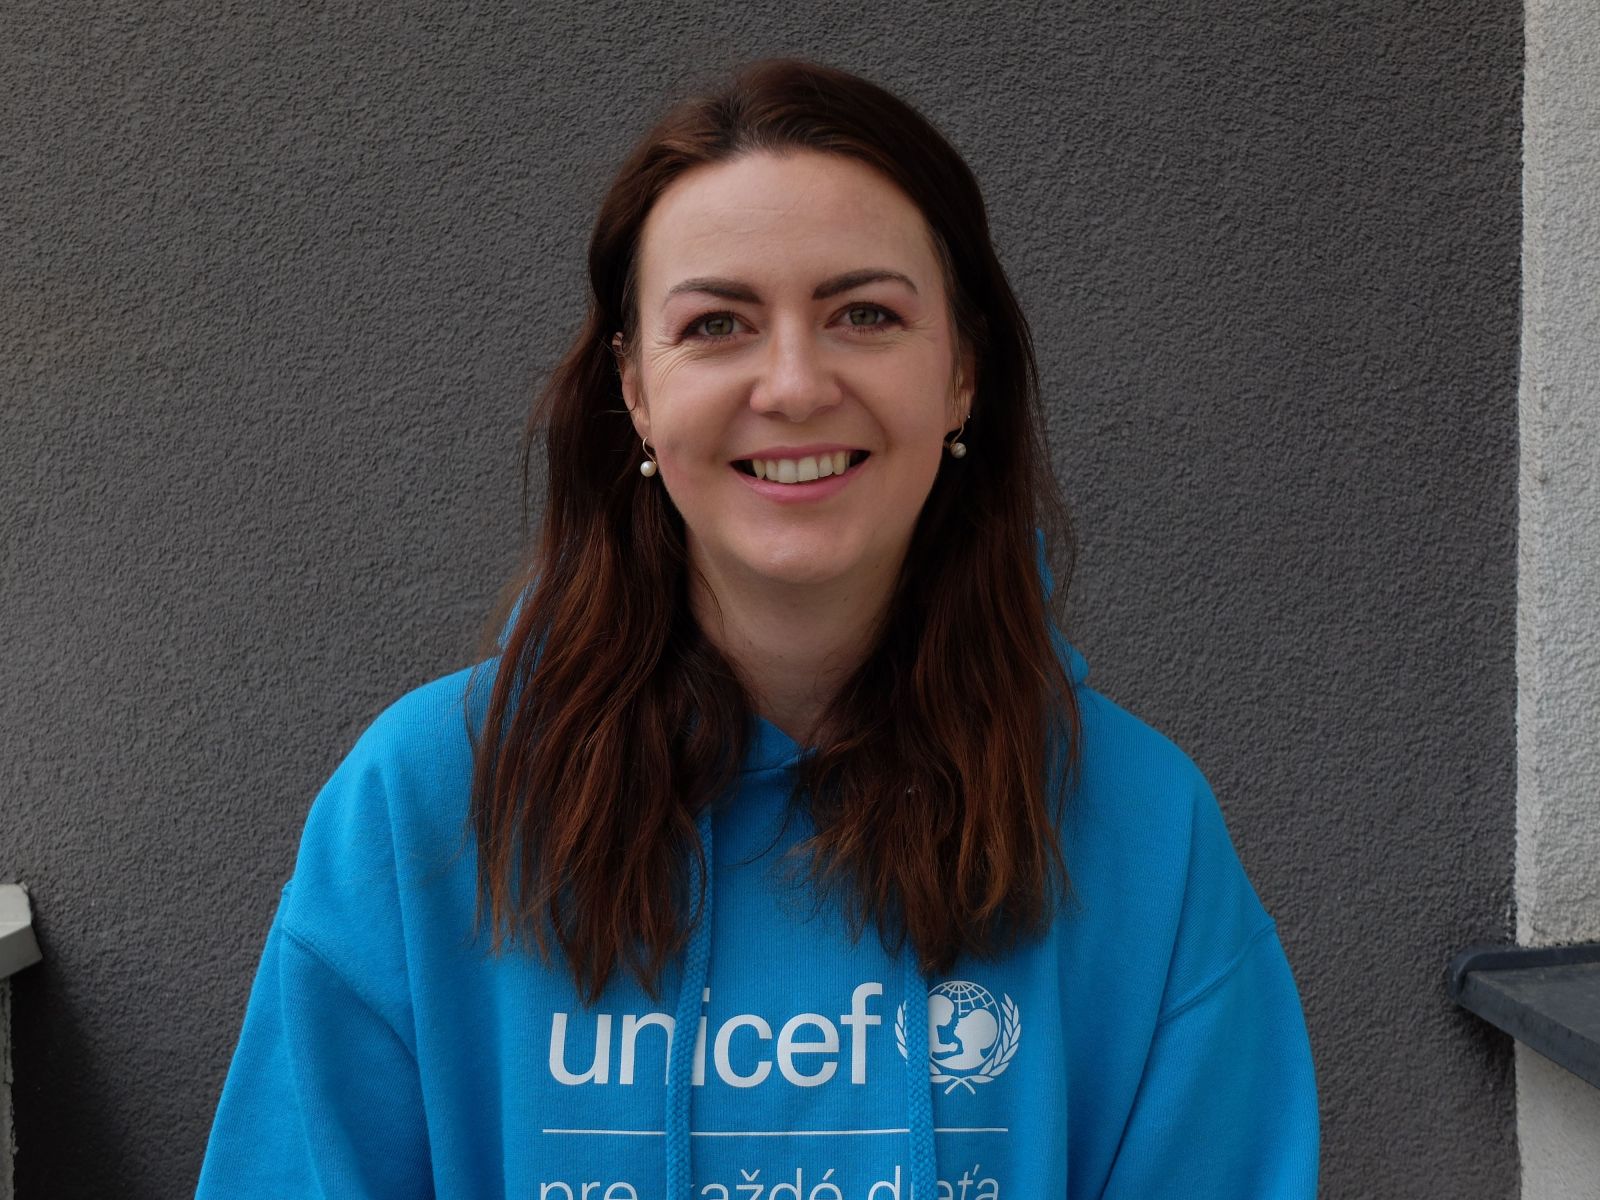 Riaditeľka UNICEF: Darovanie vecí je najhorší spôsob pomoci, stojí to viac peňazí, než samotné oblečenie